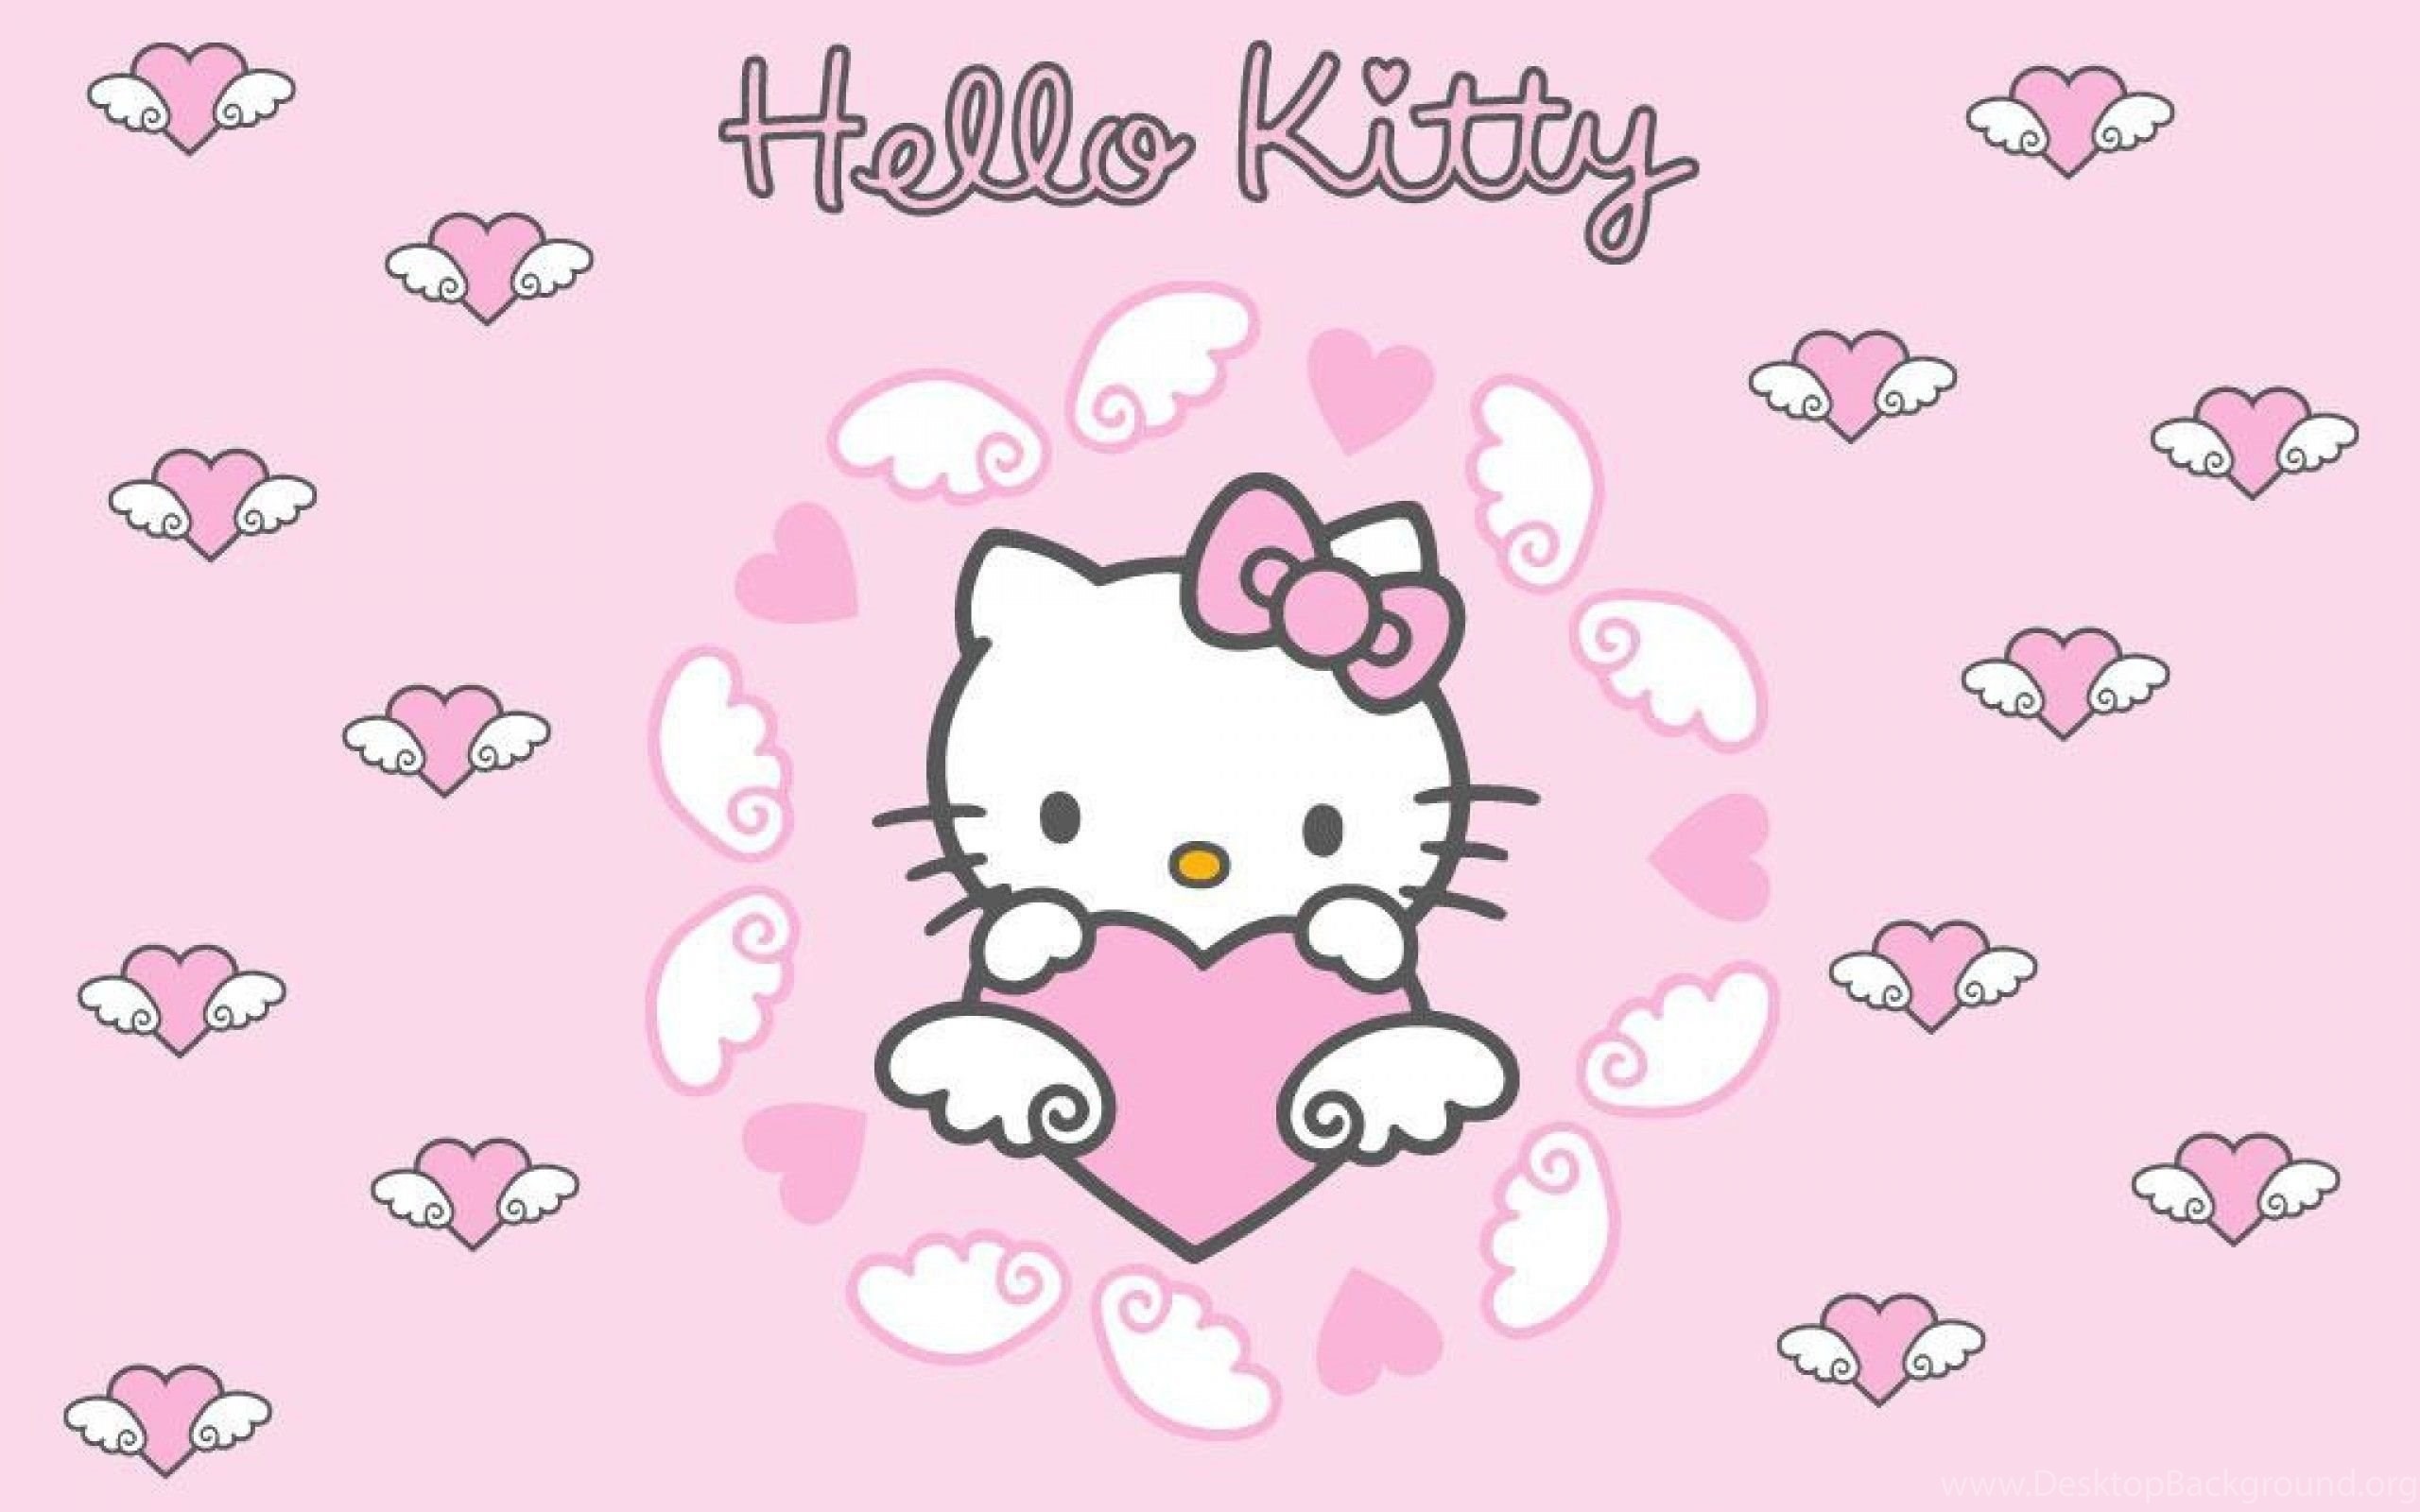 Hãy xem hình nền Hello Kitty màu hồng đáng yêu này để trở nên vui tươi hơn! Chú Kitty xinh xắn sẽ mang đến cho bạn niềm vui và sự ngọt ngào khi nhìn vào điện thoại của mình. Hãy đón chờ để khám phá những hình ảnh tuyệt vời này nhé! (Translation: Let\'s check out this lovely pink Hello Kitty wallpaper to make your day brighter! Cute Kitty will bring you joy and sweetness when you look at your phone. Stay tuned to discover these amazing images!)